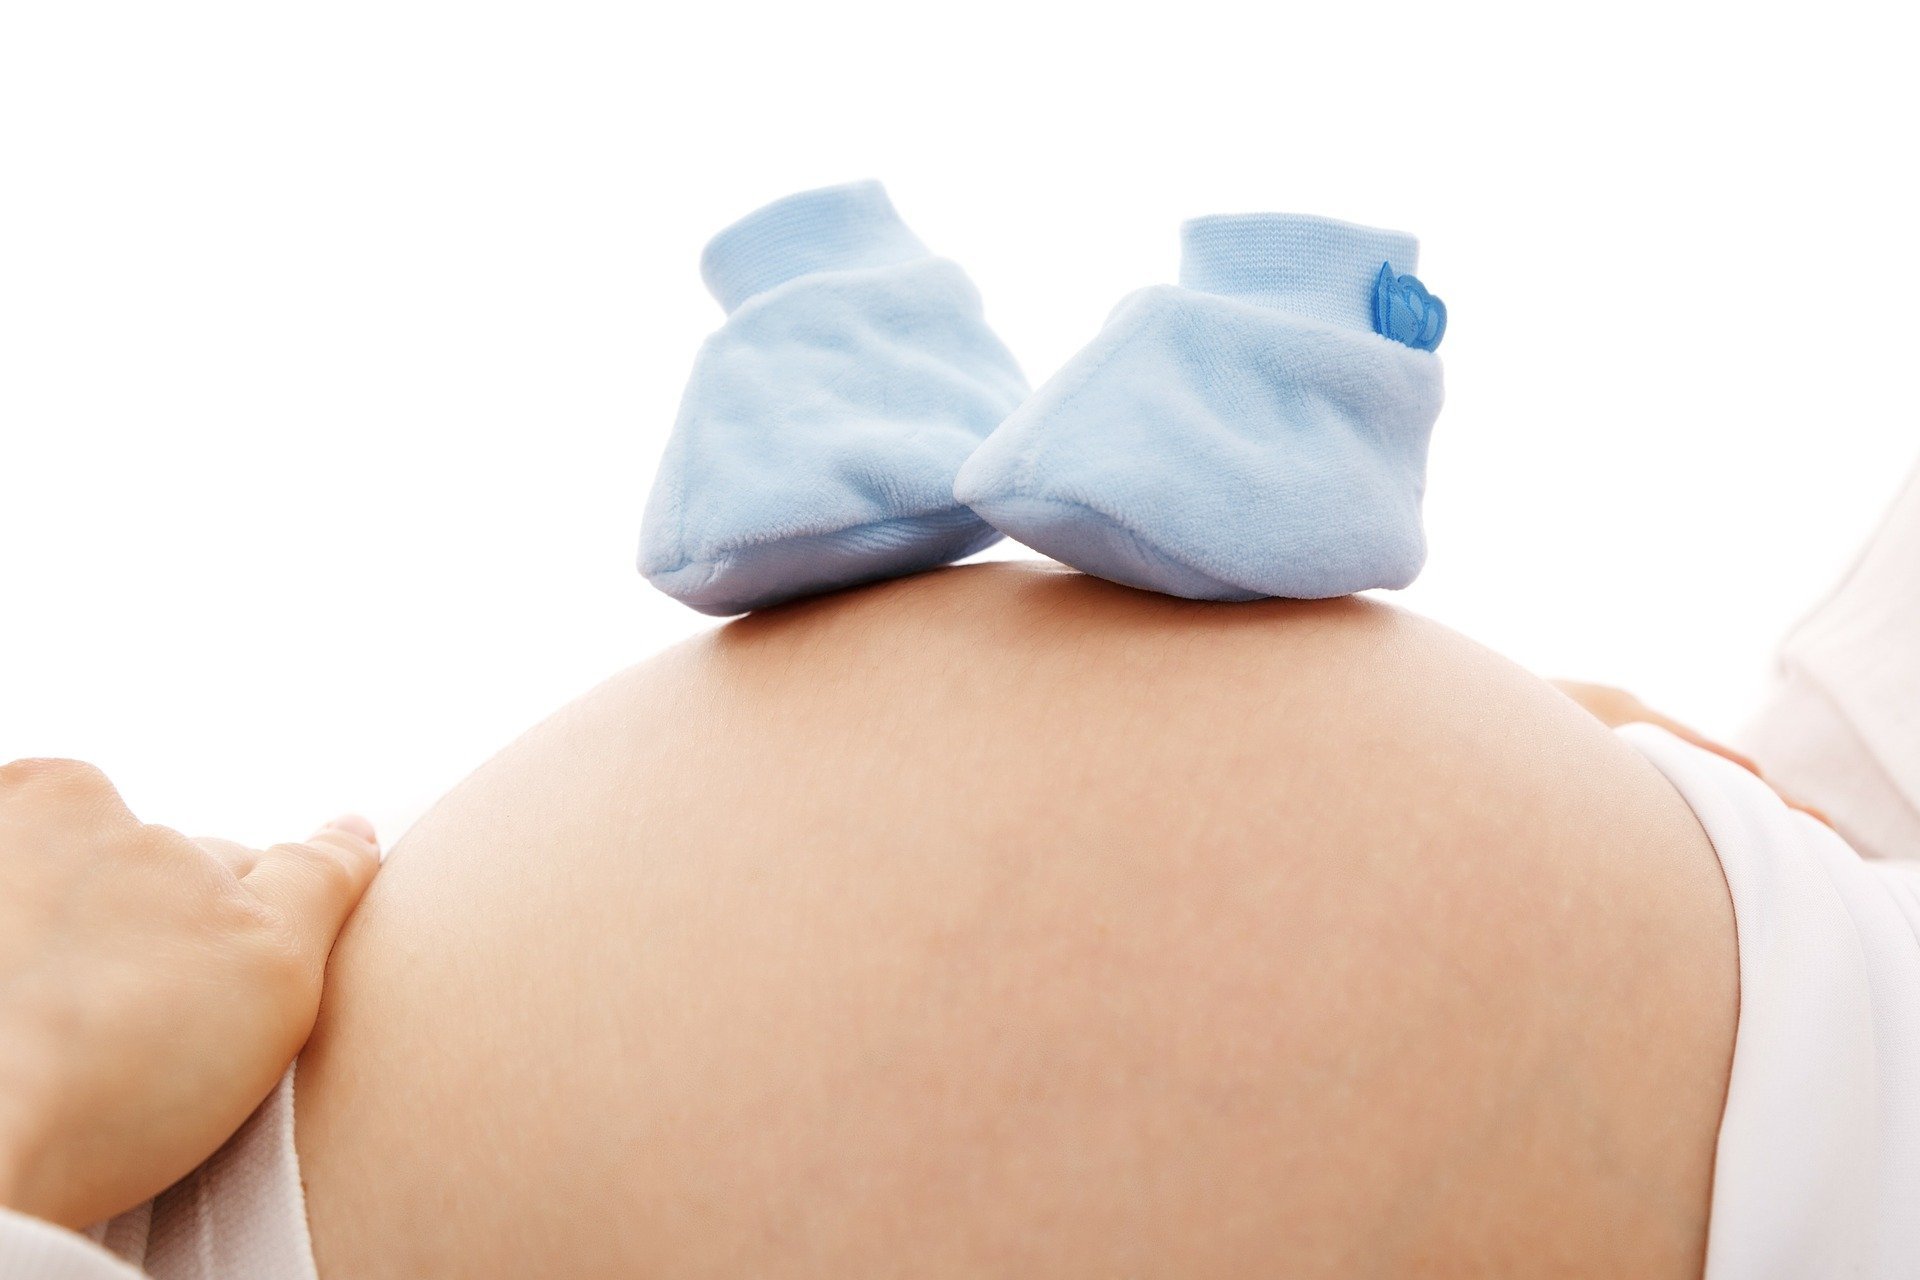 Leczenie wewnątrzmaciczne – choroby płodu leczone w łonie matki